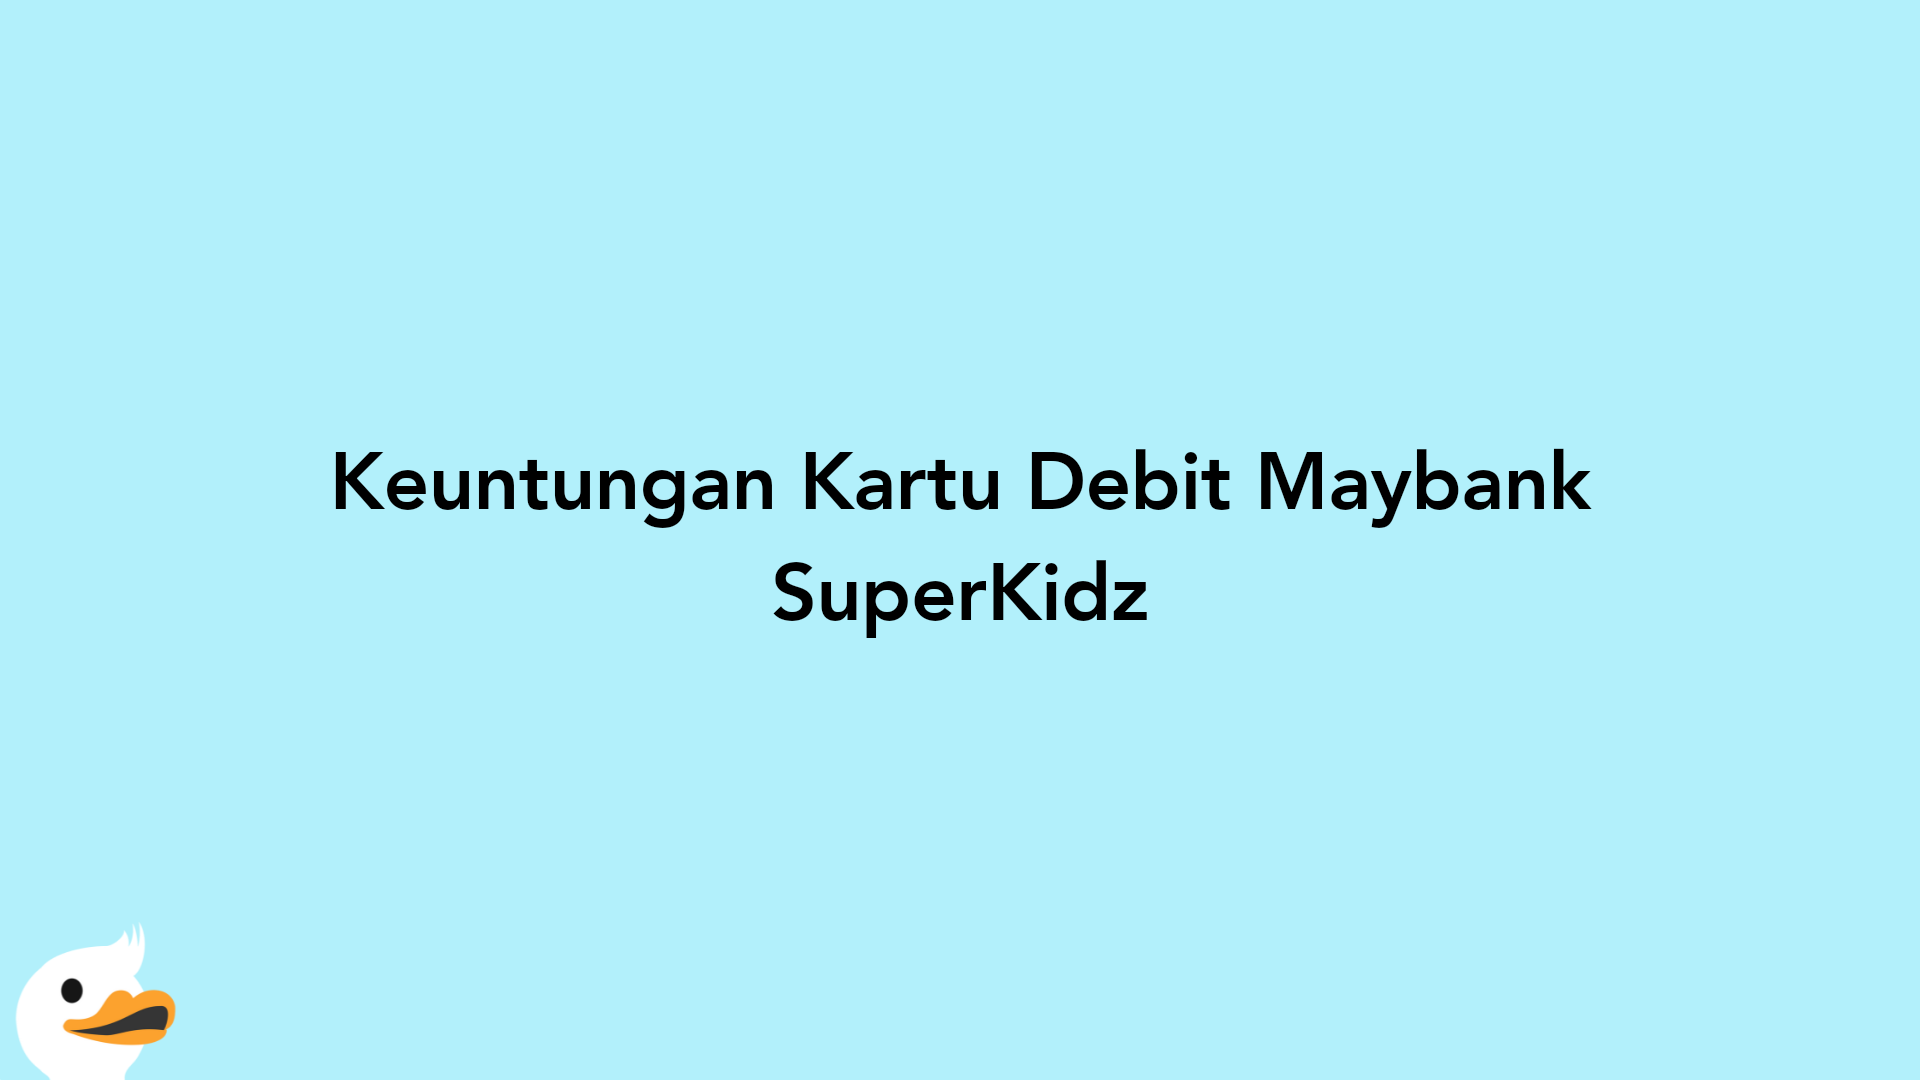 Keuntungan Kartu Debit Maybank SuperKidz